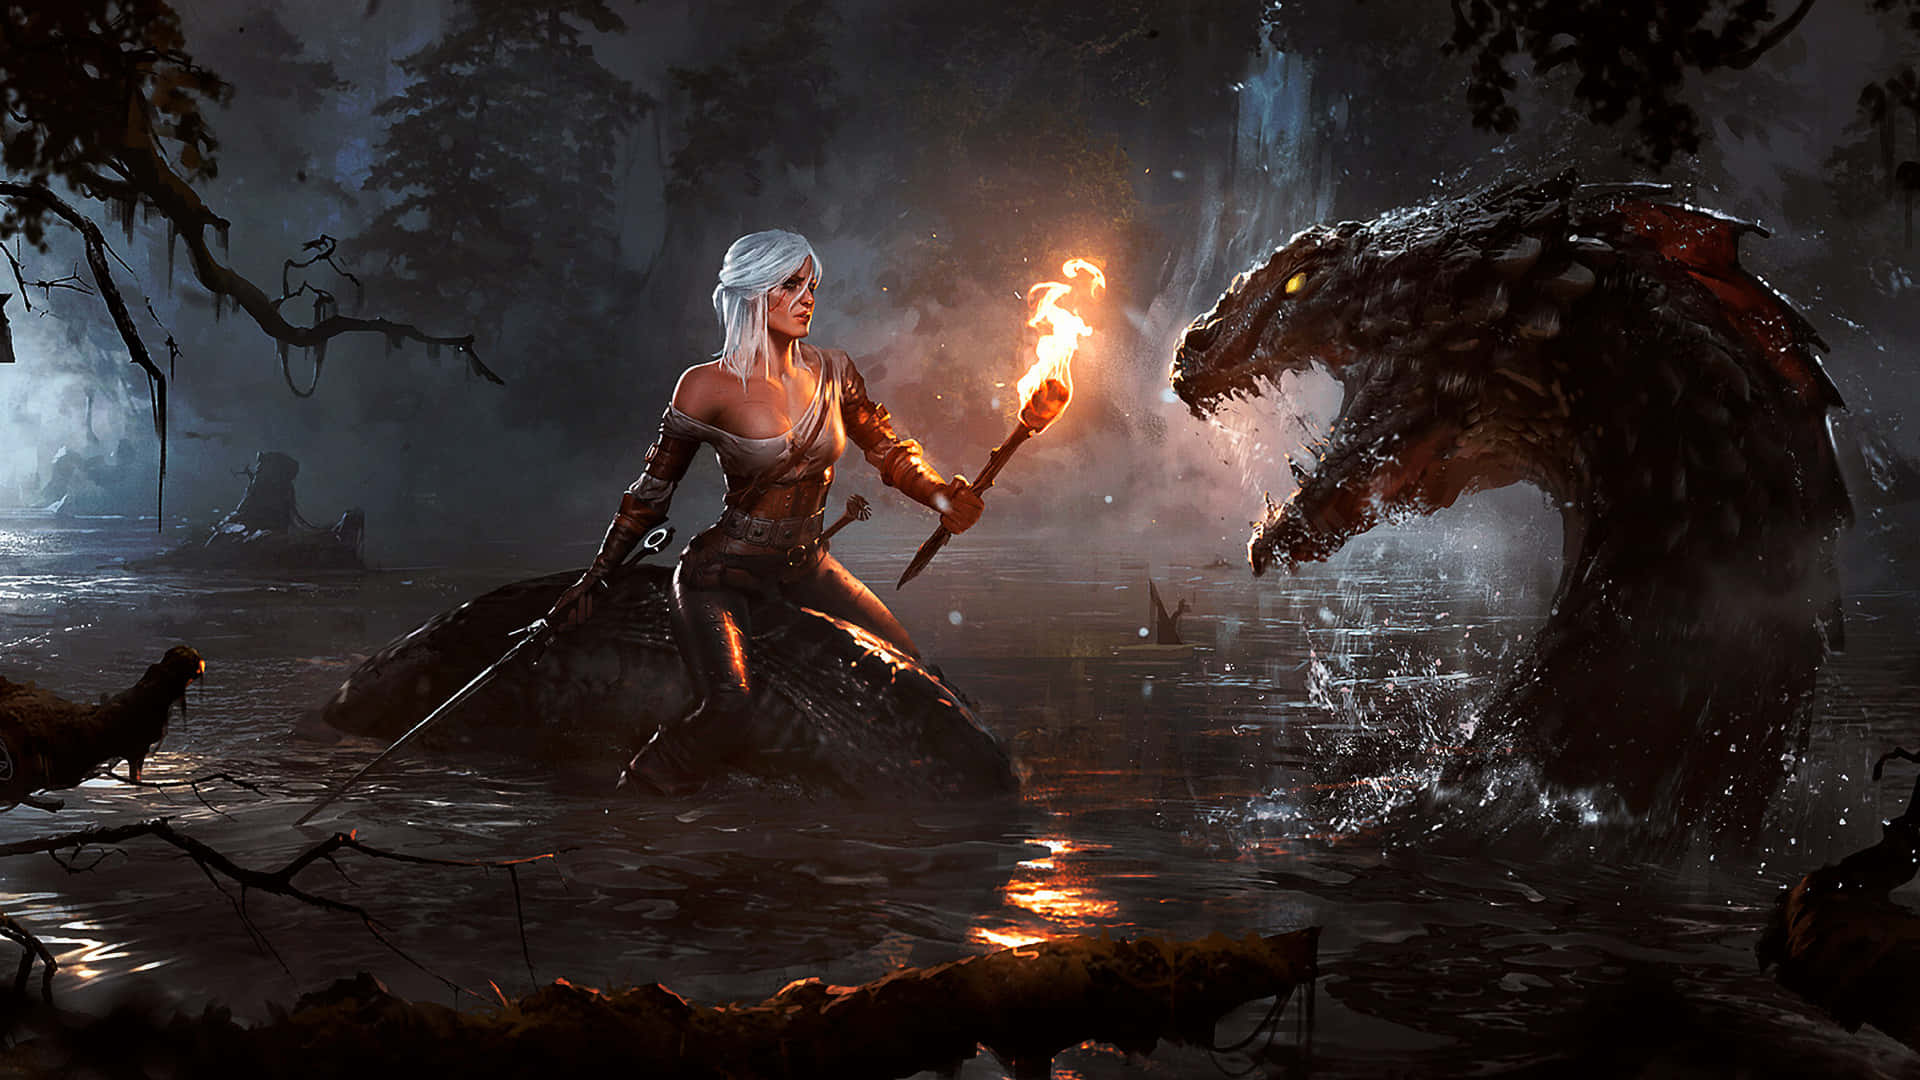 Geraltdi Rivia, Il Witcher, In Un Bellissimo Paesaggio